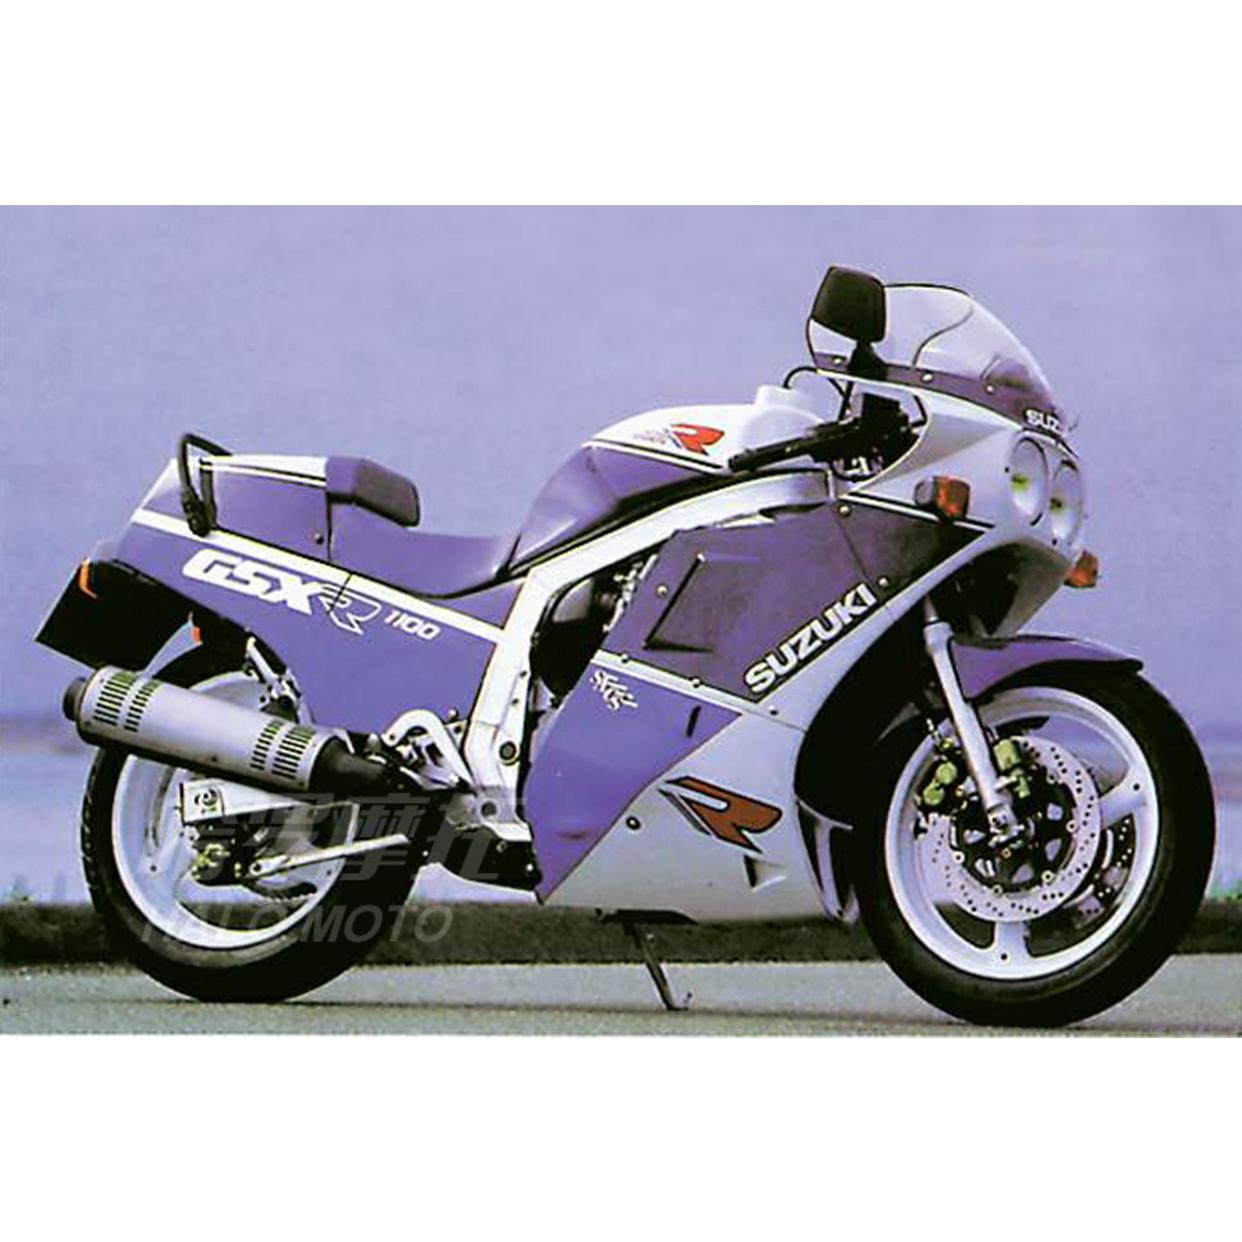 下载手机图片:铃木公司, 铃木B King, Suzuki B King, 摩托车, 自行车，免费99609。